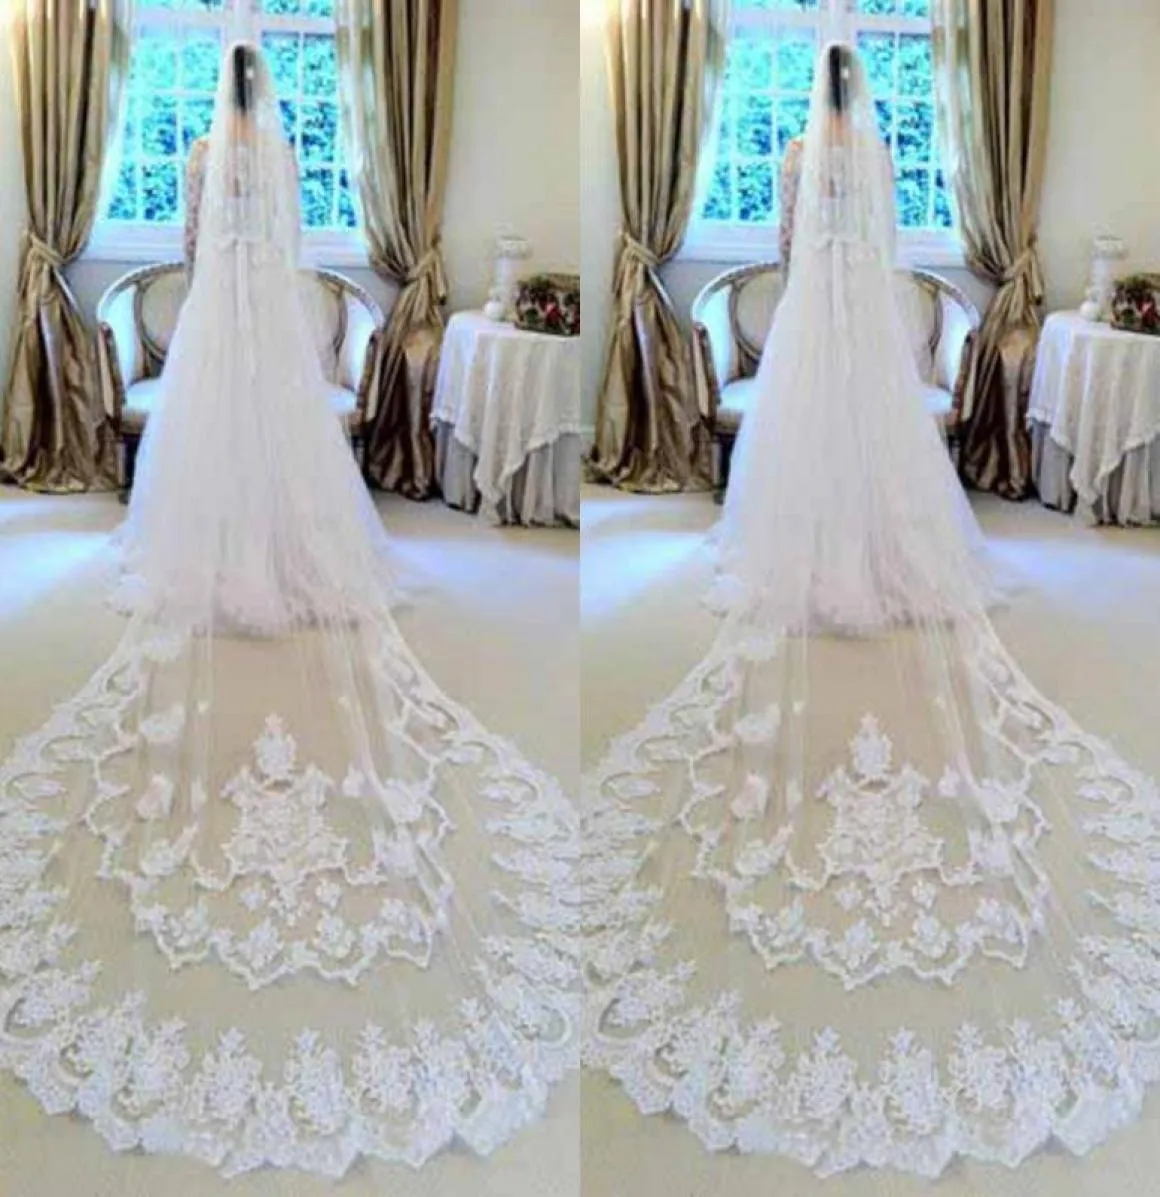 Изготовленные на заказ белые кружевные свадебные завесы 2016 от Eifflebride с украшенной великолепной аппликацией около 3 метров